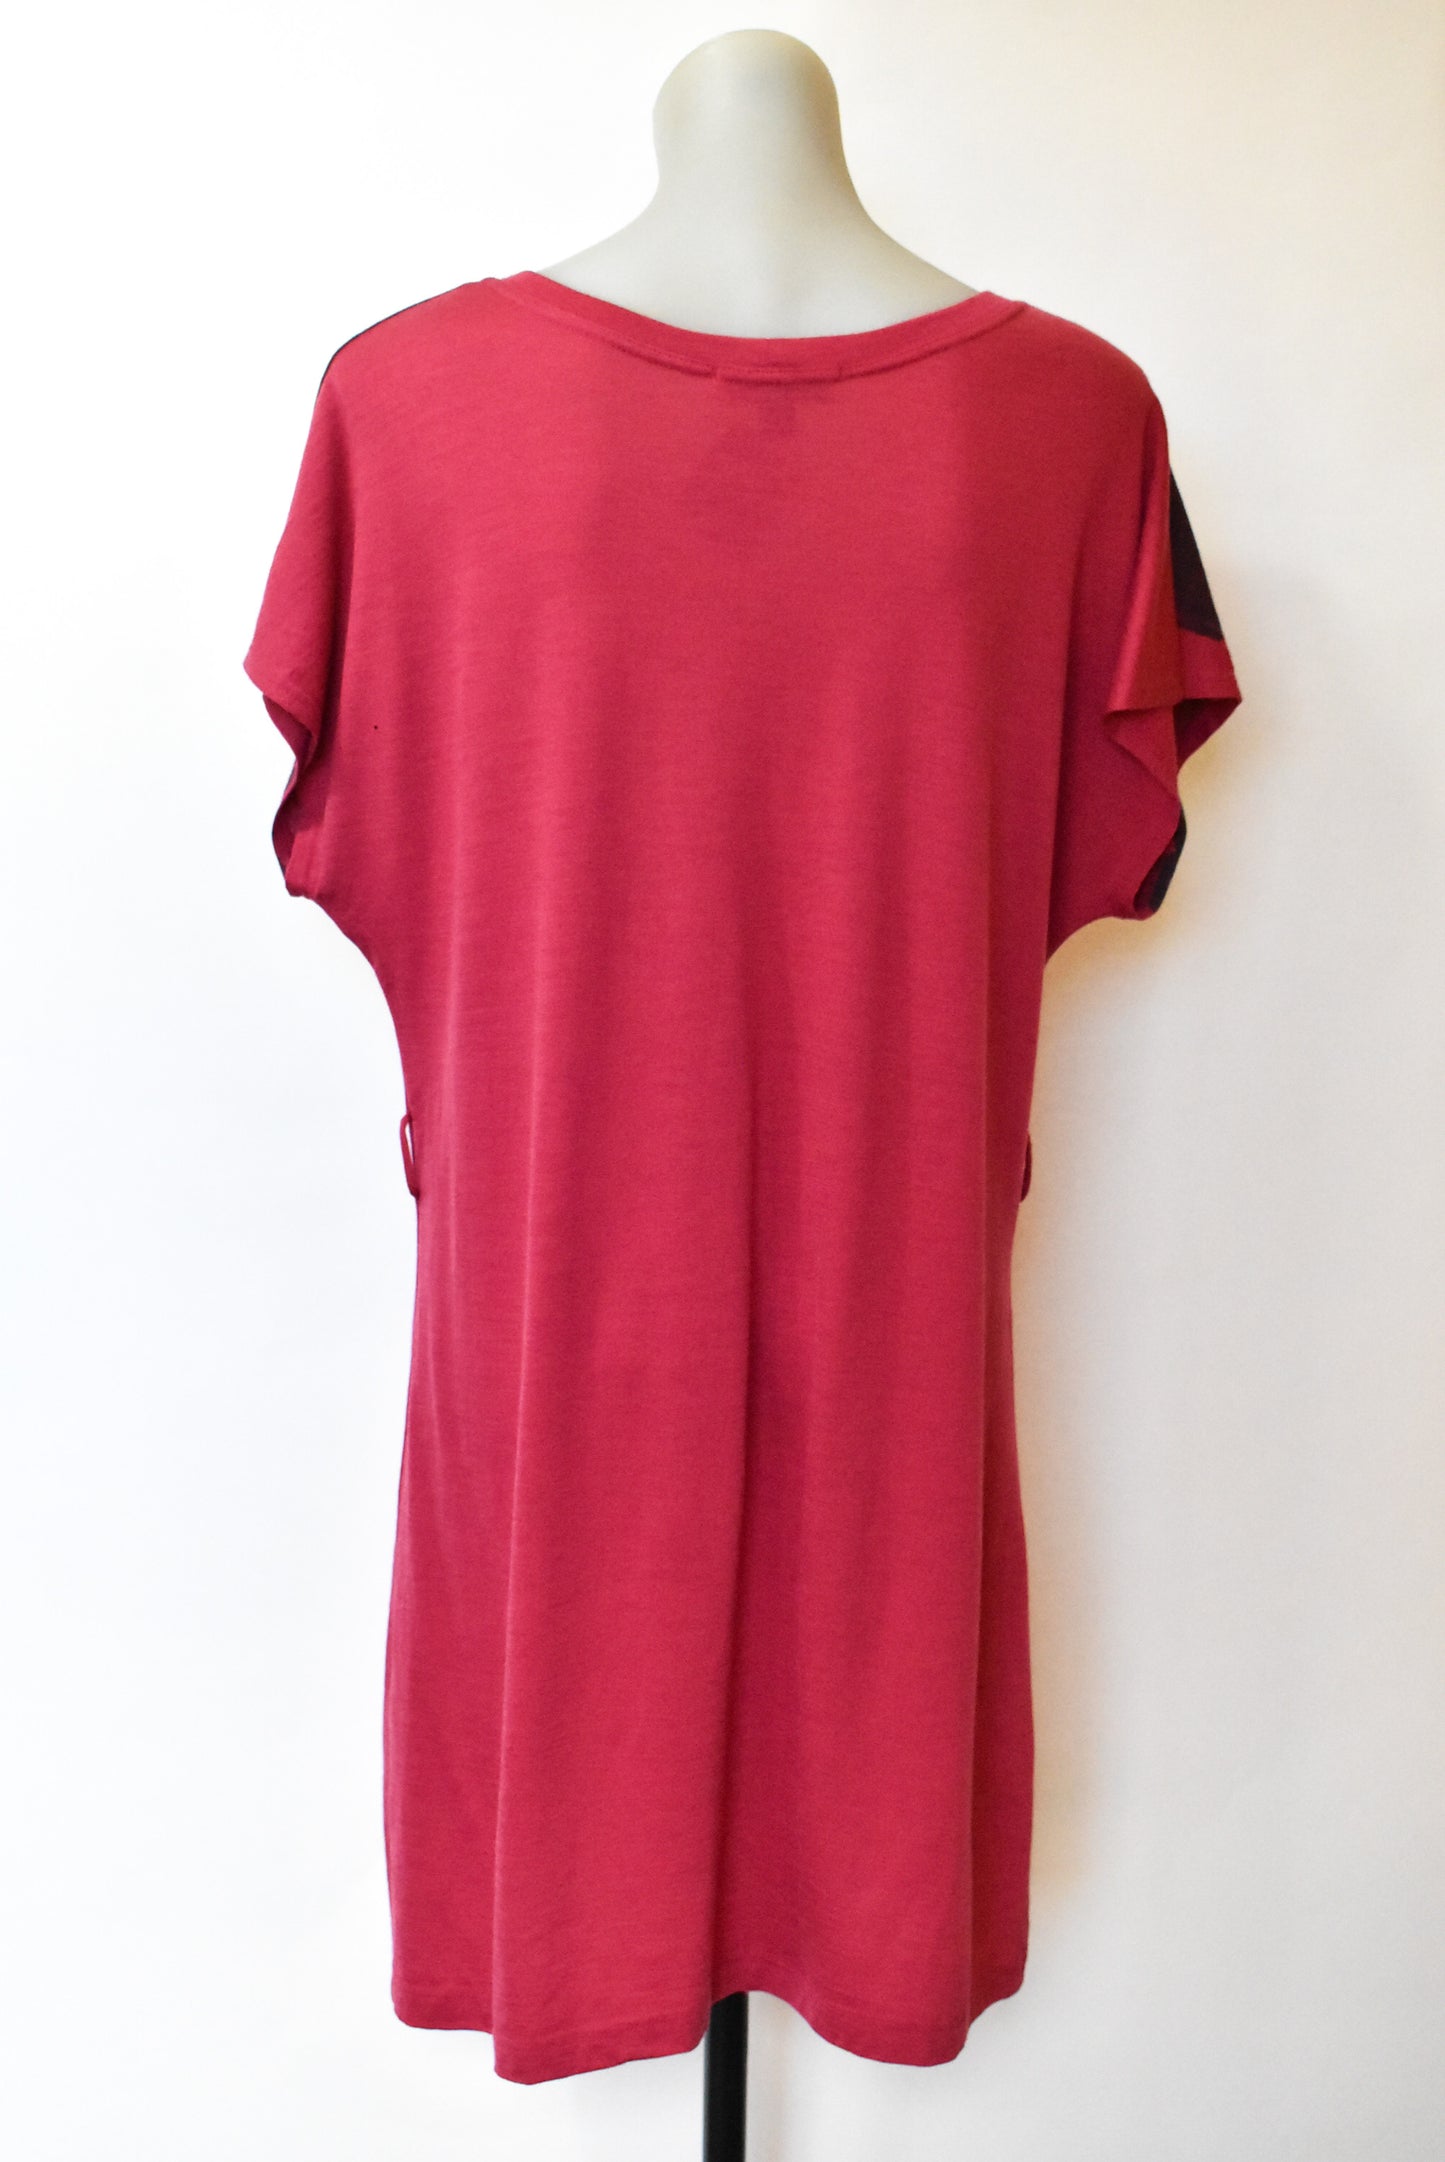 Charmaine Reveley merino t-shirt dress, 12